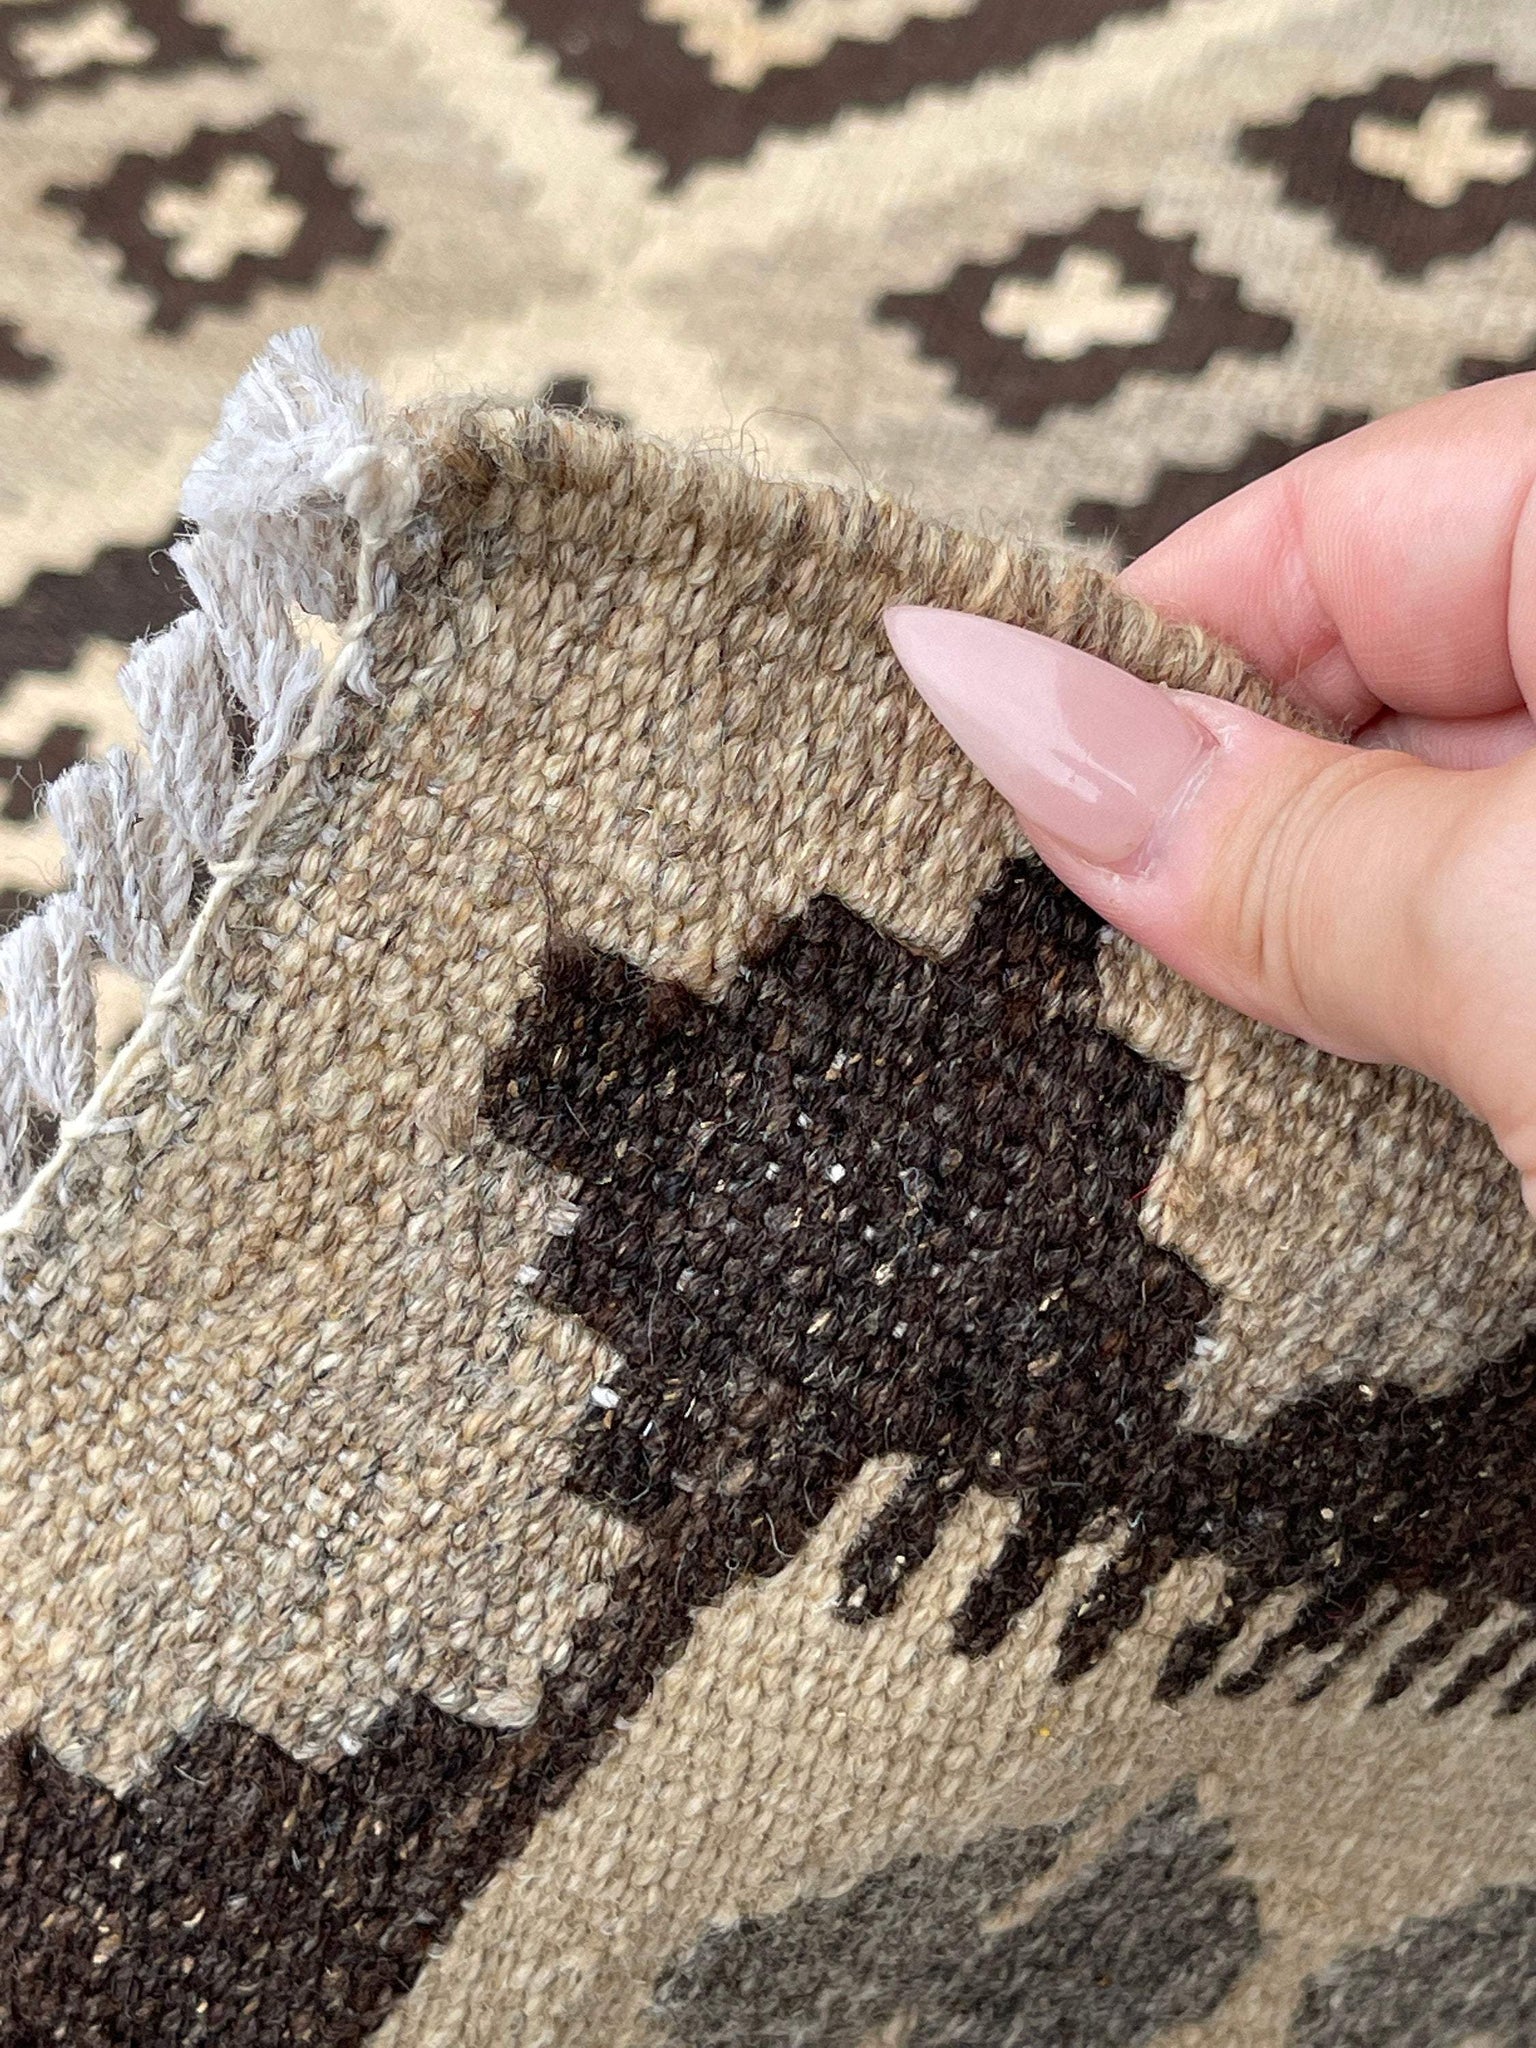 3x5 (120x150) Handmade Afghan Kilim Runner Rug | Ivory Coffee Brown | Flatweave Flat Weave Tribal Turkish Oushak Moroccan Oriental Wool